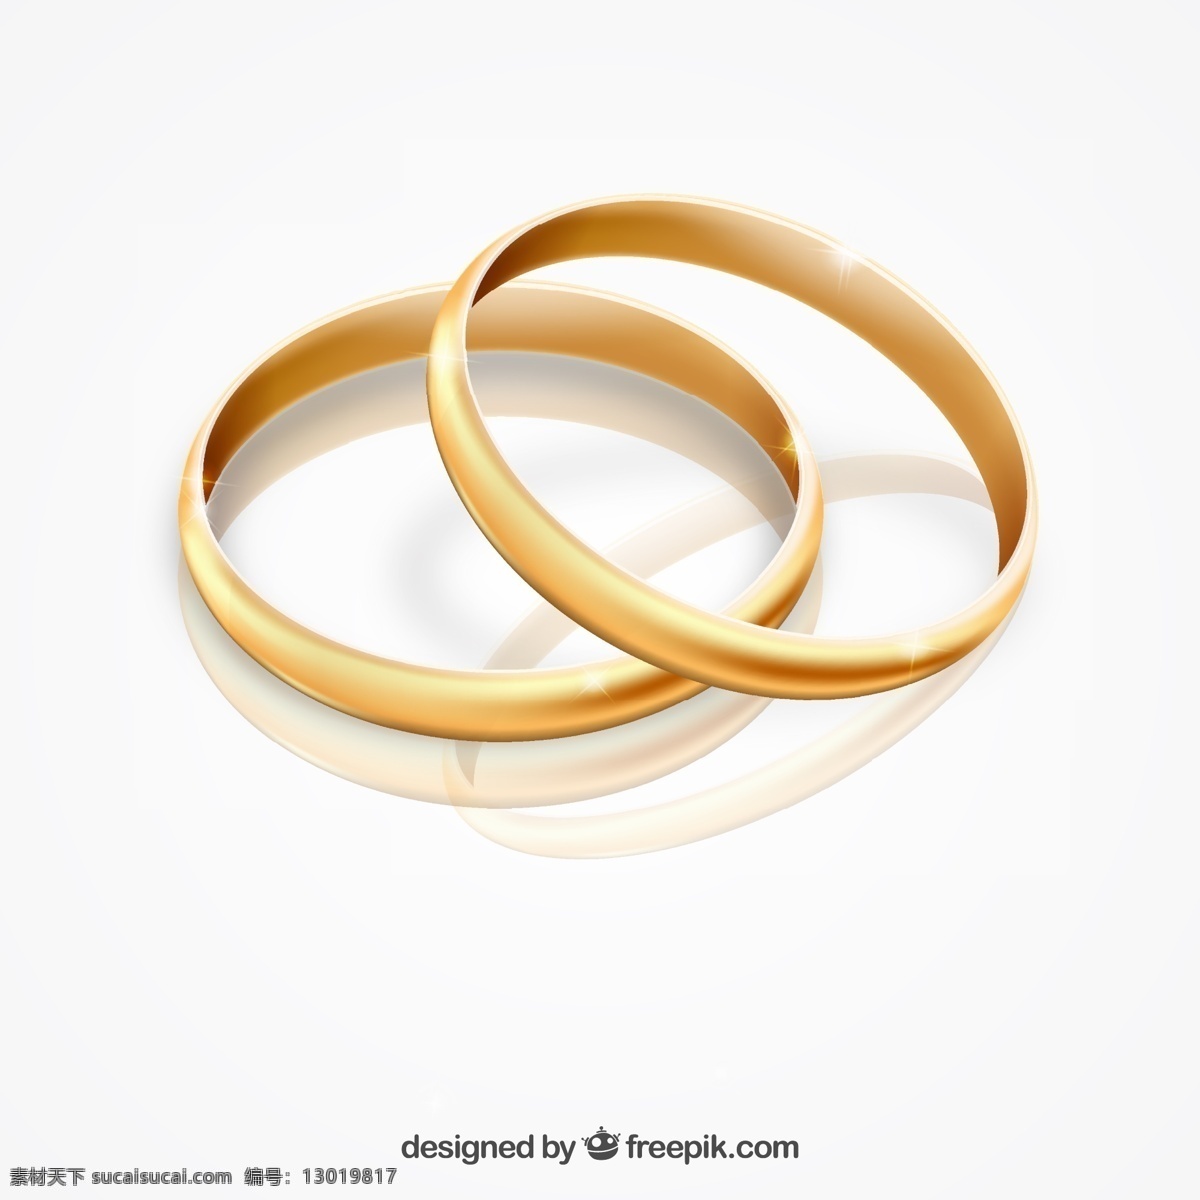 金戒指 婚礼 爱情 黄金 珠宝 戒指 婚姻 浪漫 结婚戒指 订婚戒指 宝石 欢聚 白色